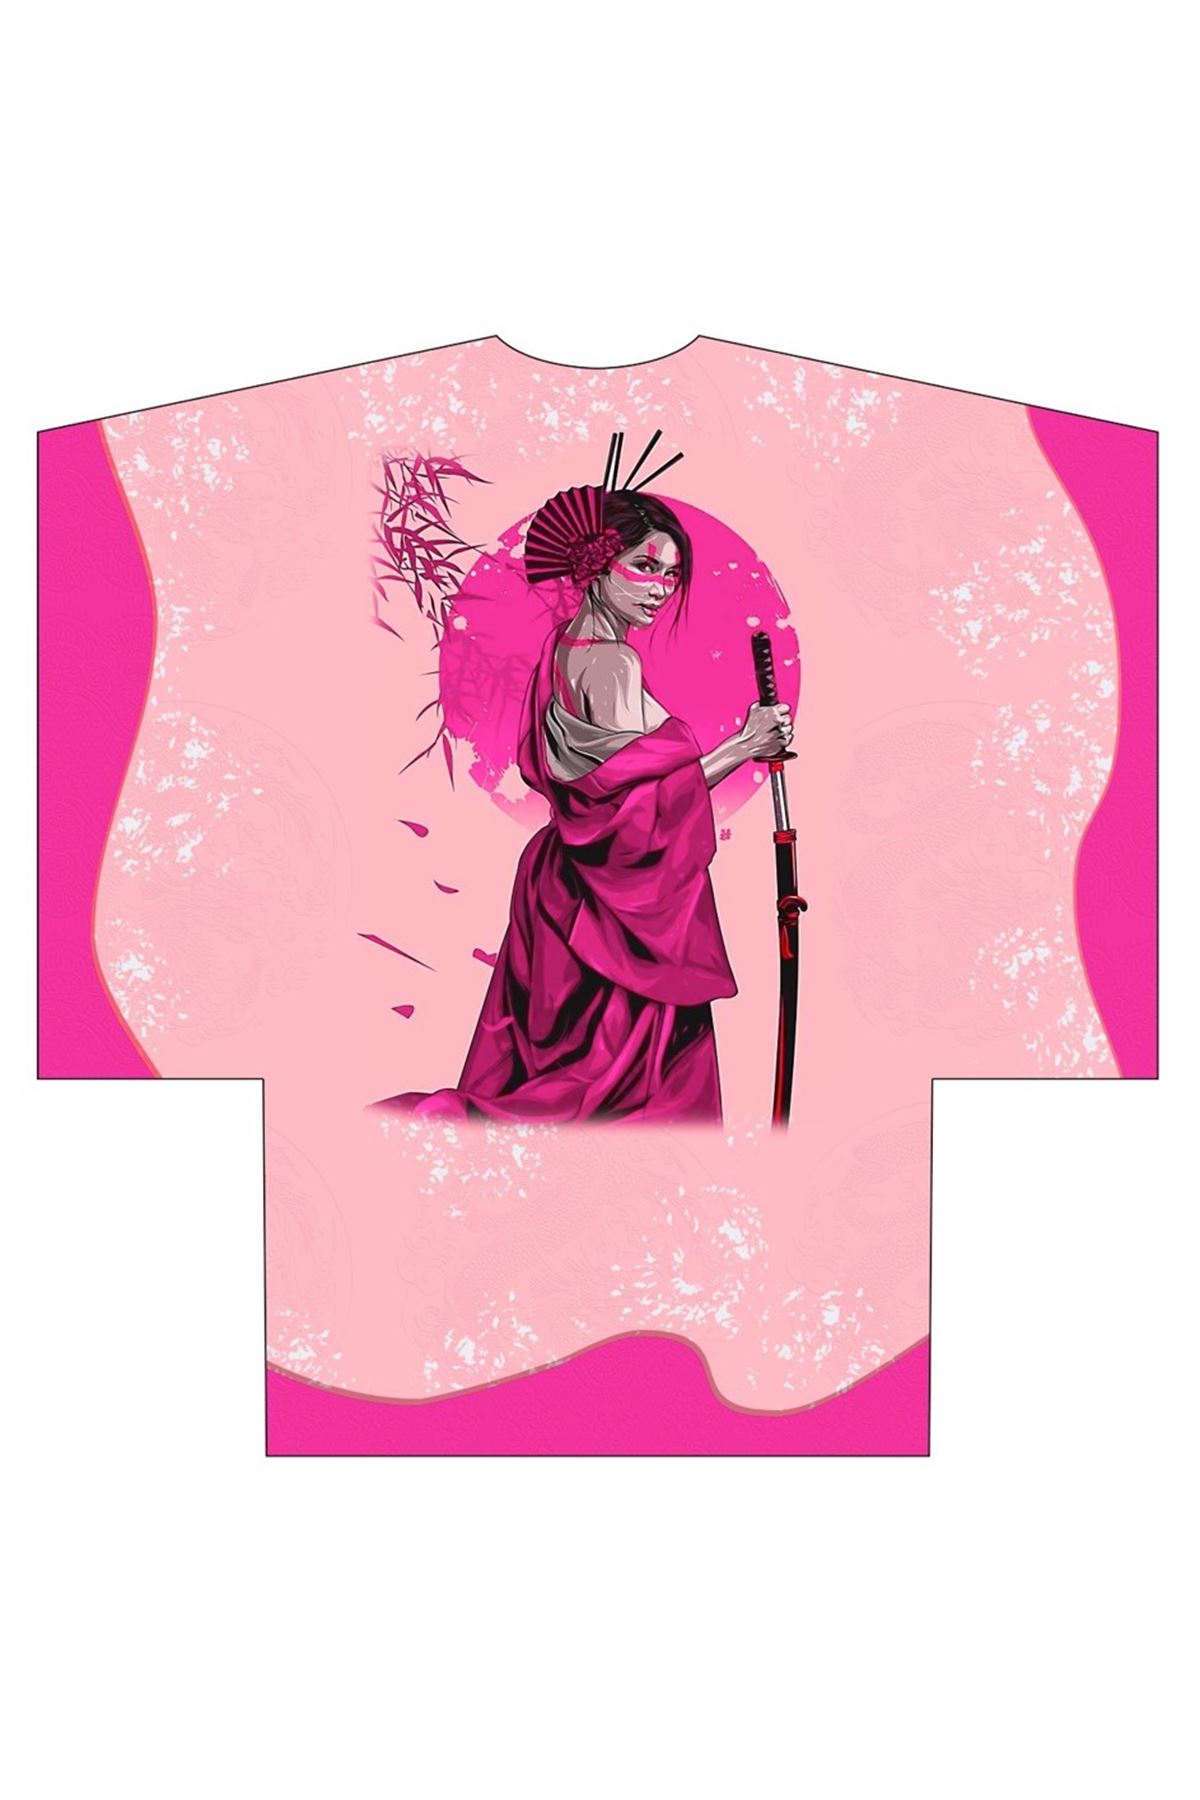 Kimono pembe  savaşçı kadın  6019